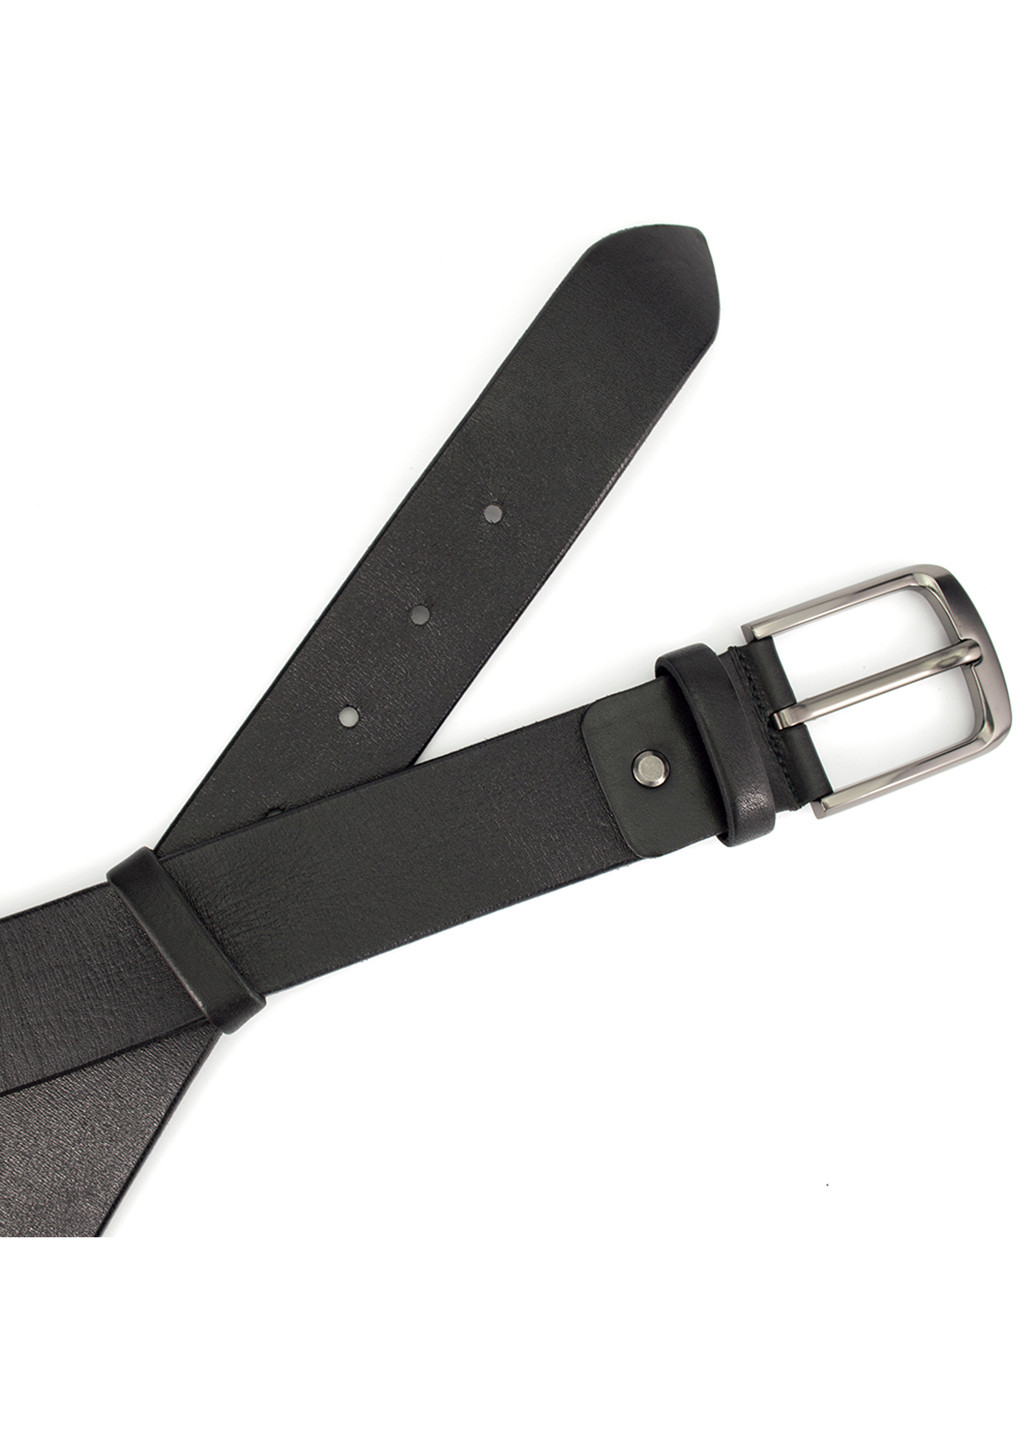 Ремень мужской кожаный батал 4 см черный KB-40 (150 см) 105 King's Belt (204850341)